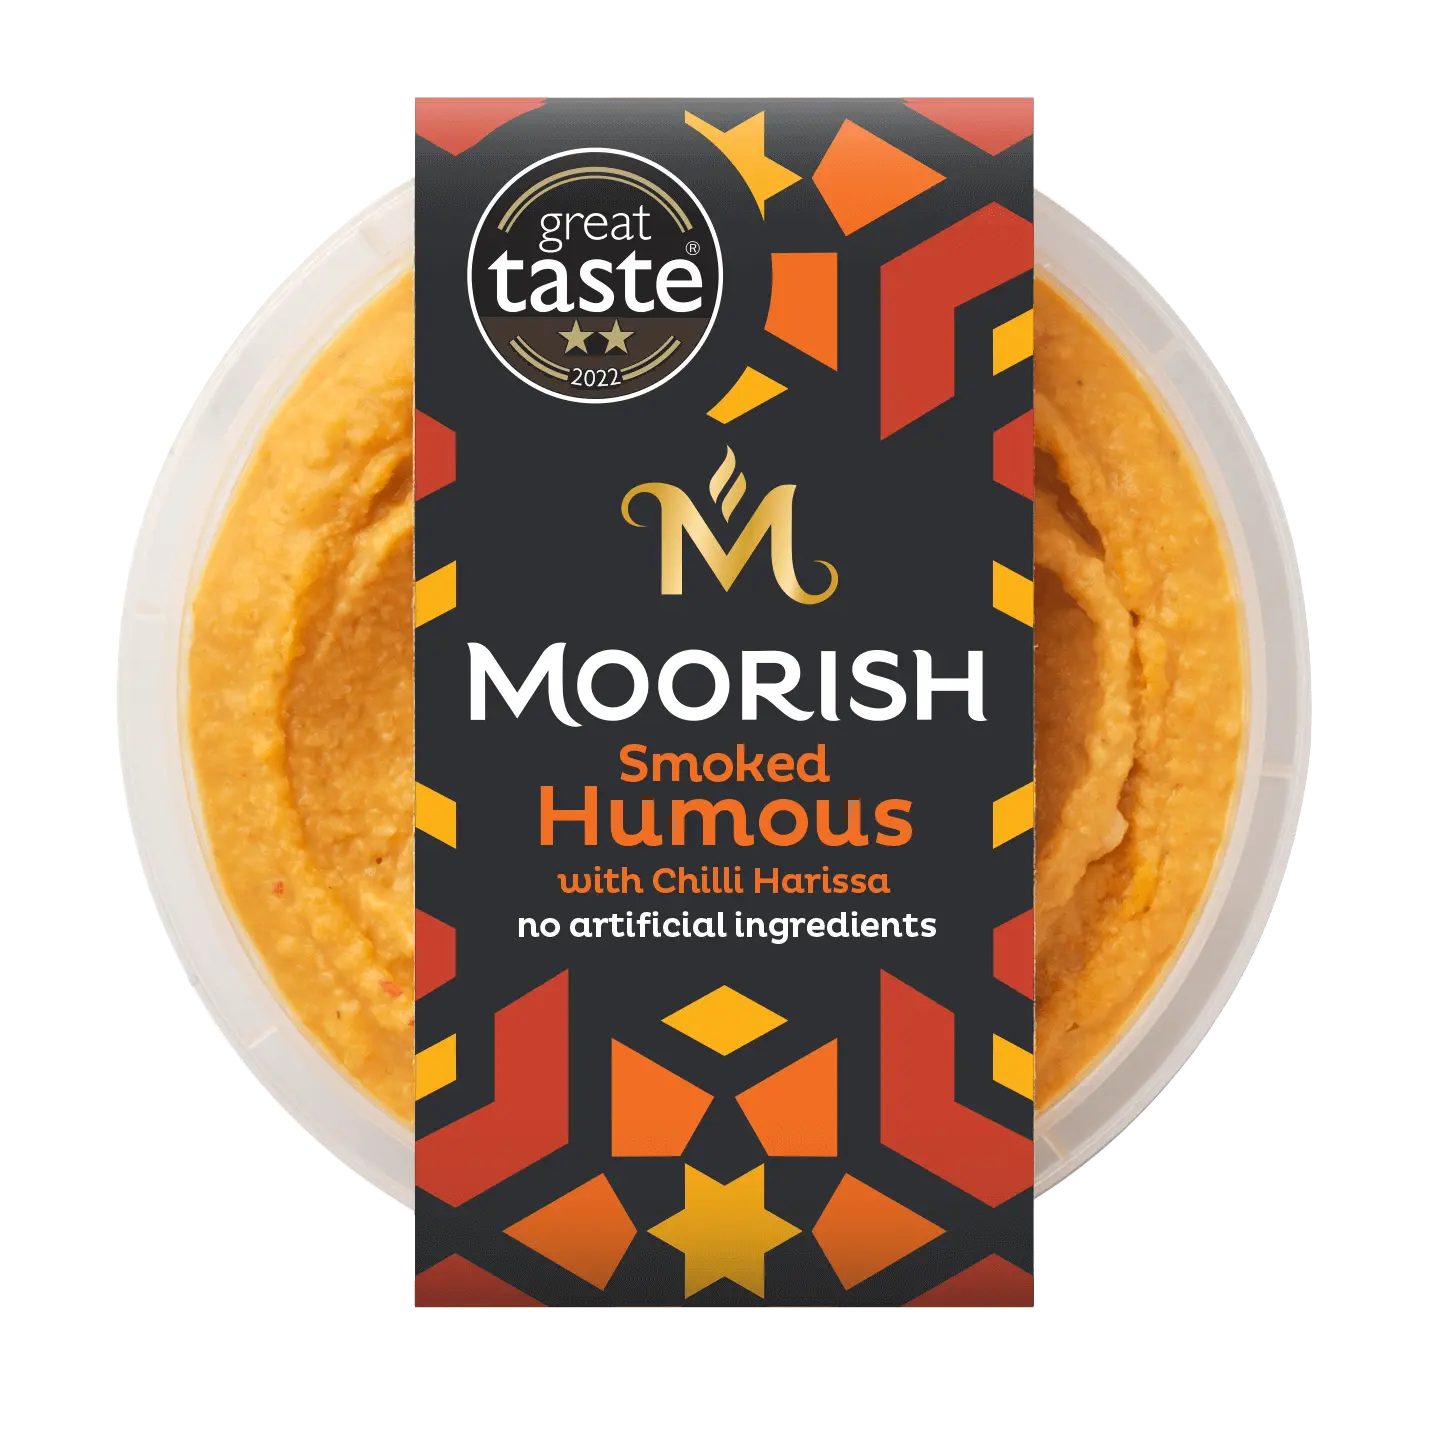 moorish smoked humous - Is Moorish hummus gluten free